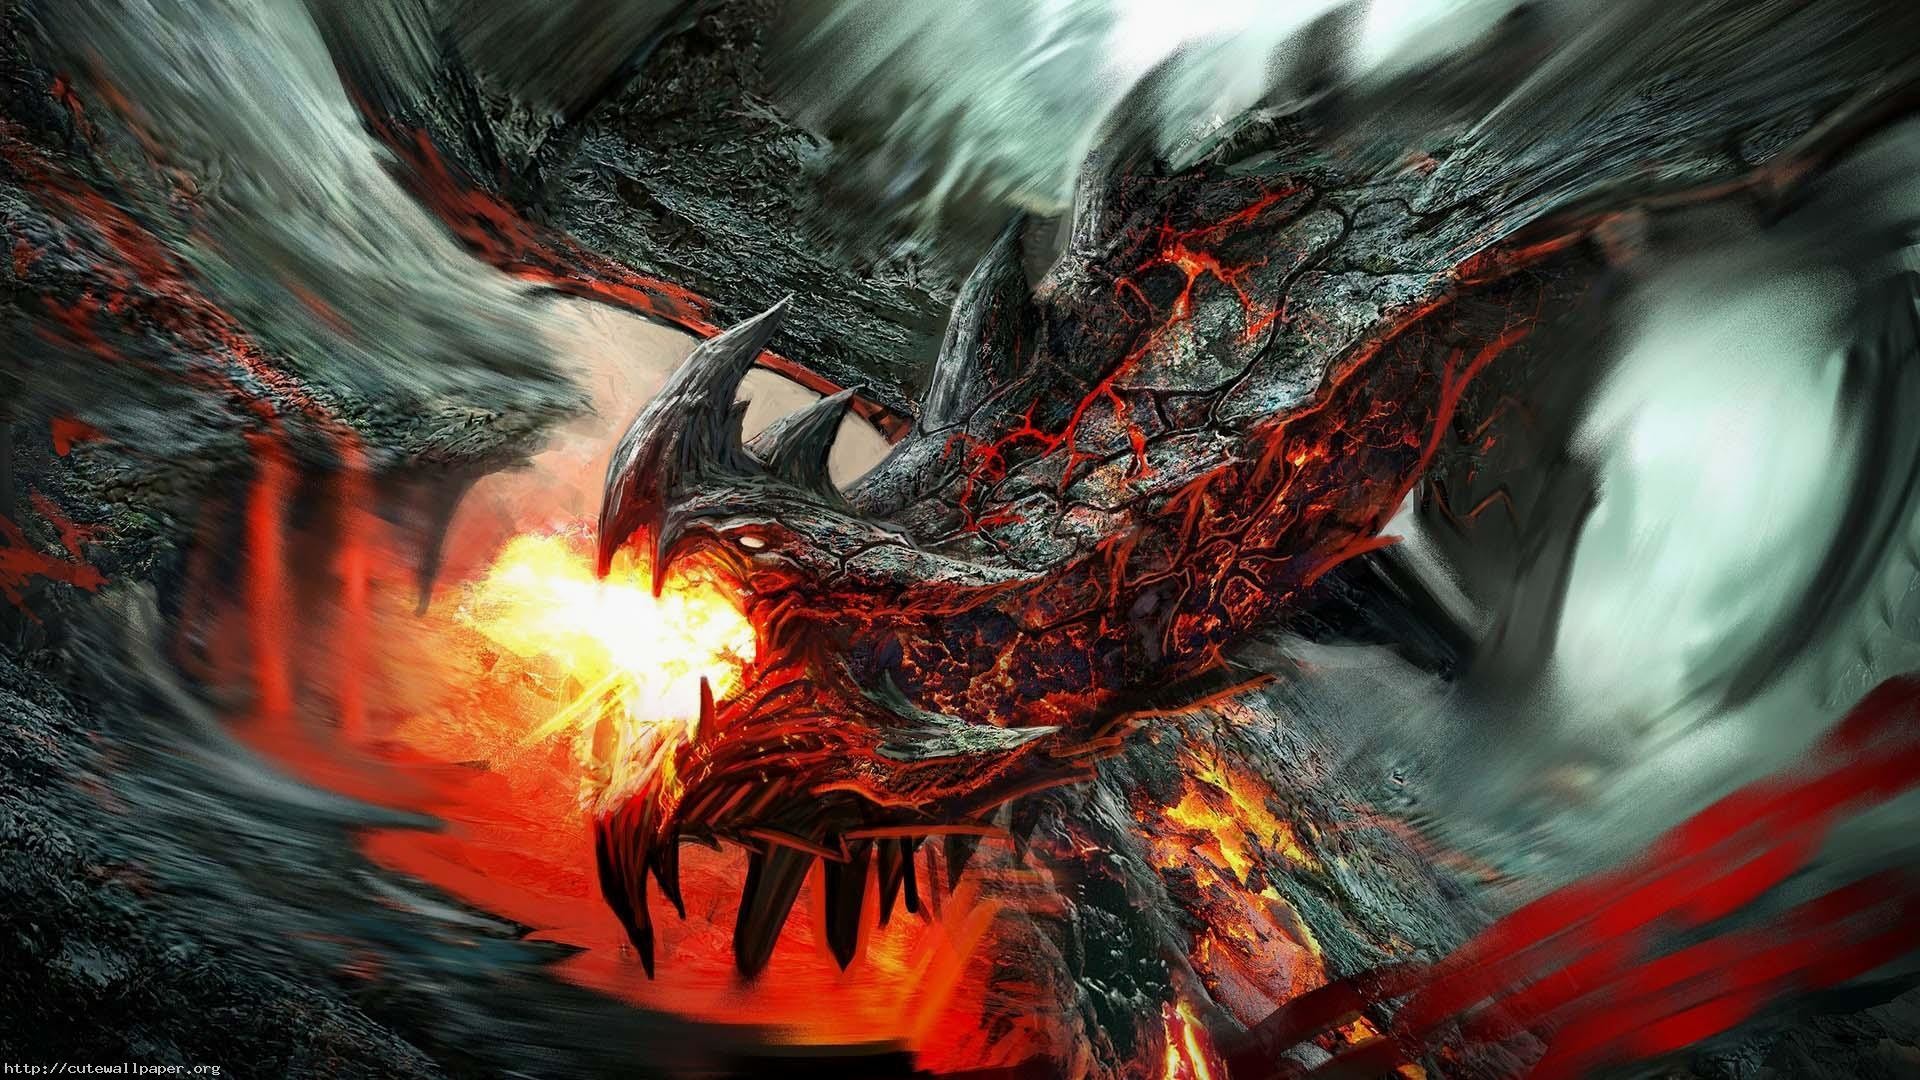 Explore Fire Dragon, Hd Wallpaper, and more